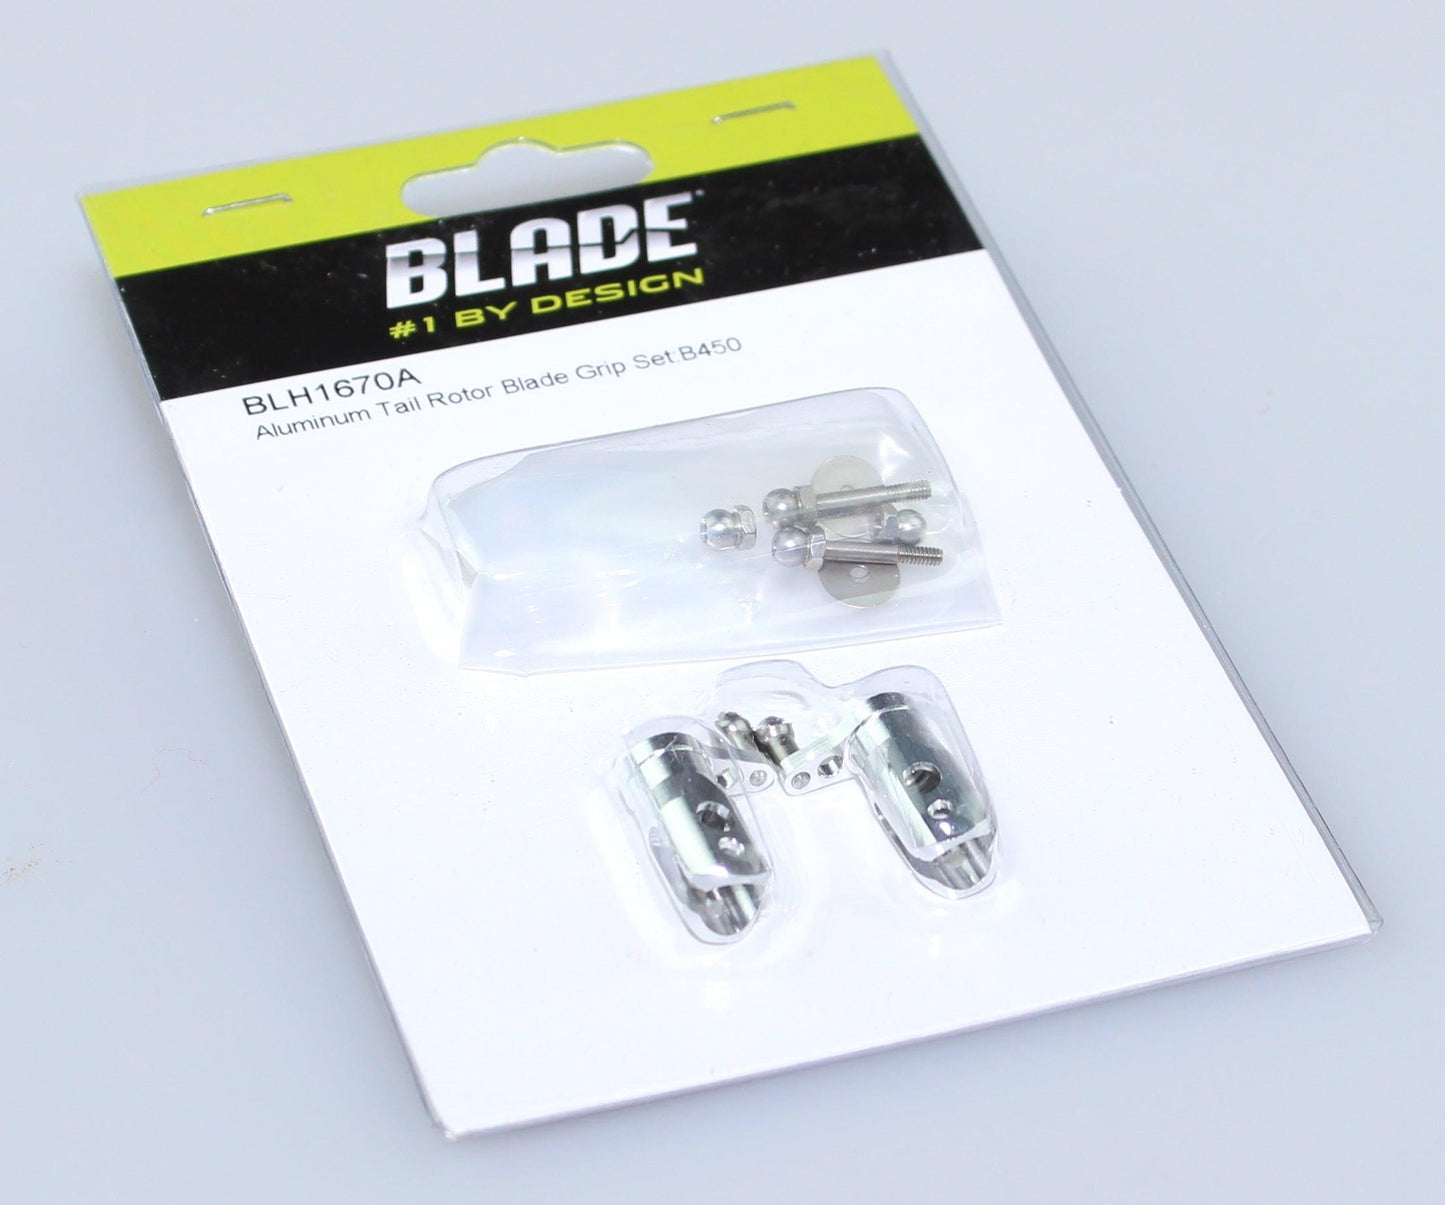 Blade 300 X/ 450 3D / X Aluminum Tail Rotor Blade Grip Holder Set 300 X BLH1670A - PowerHobby